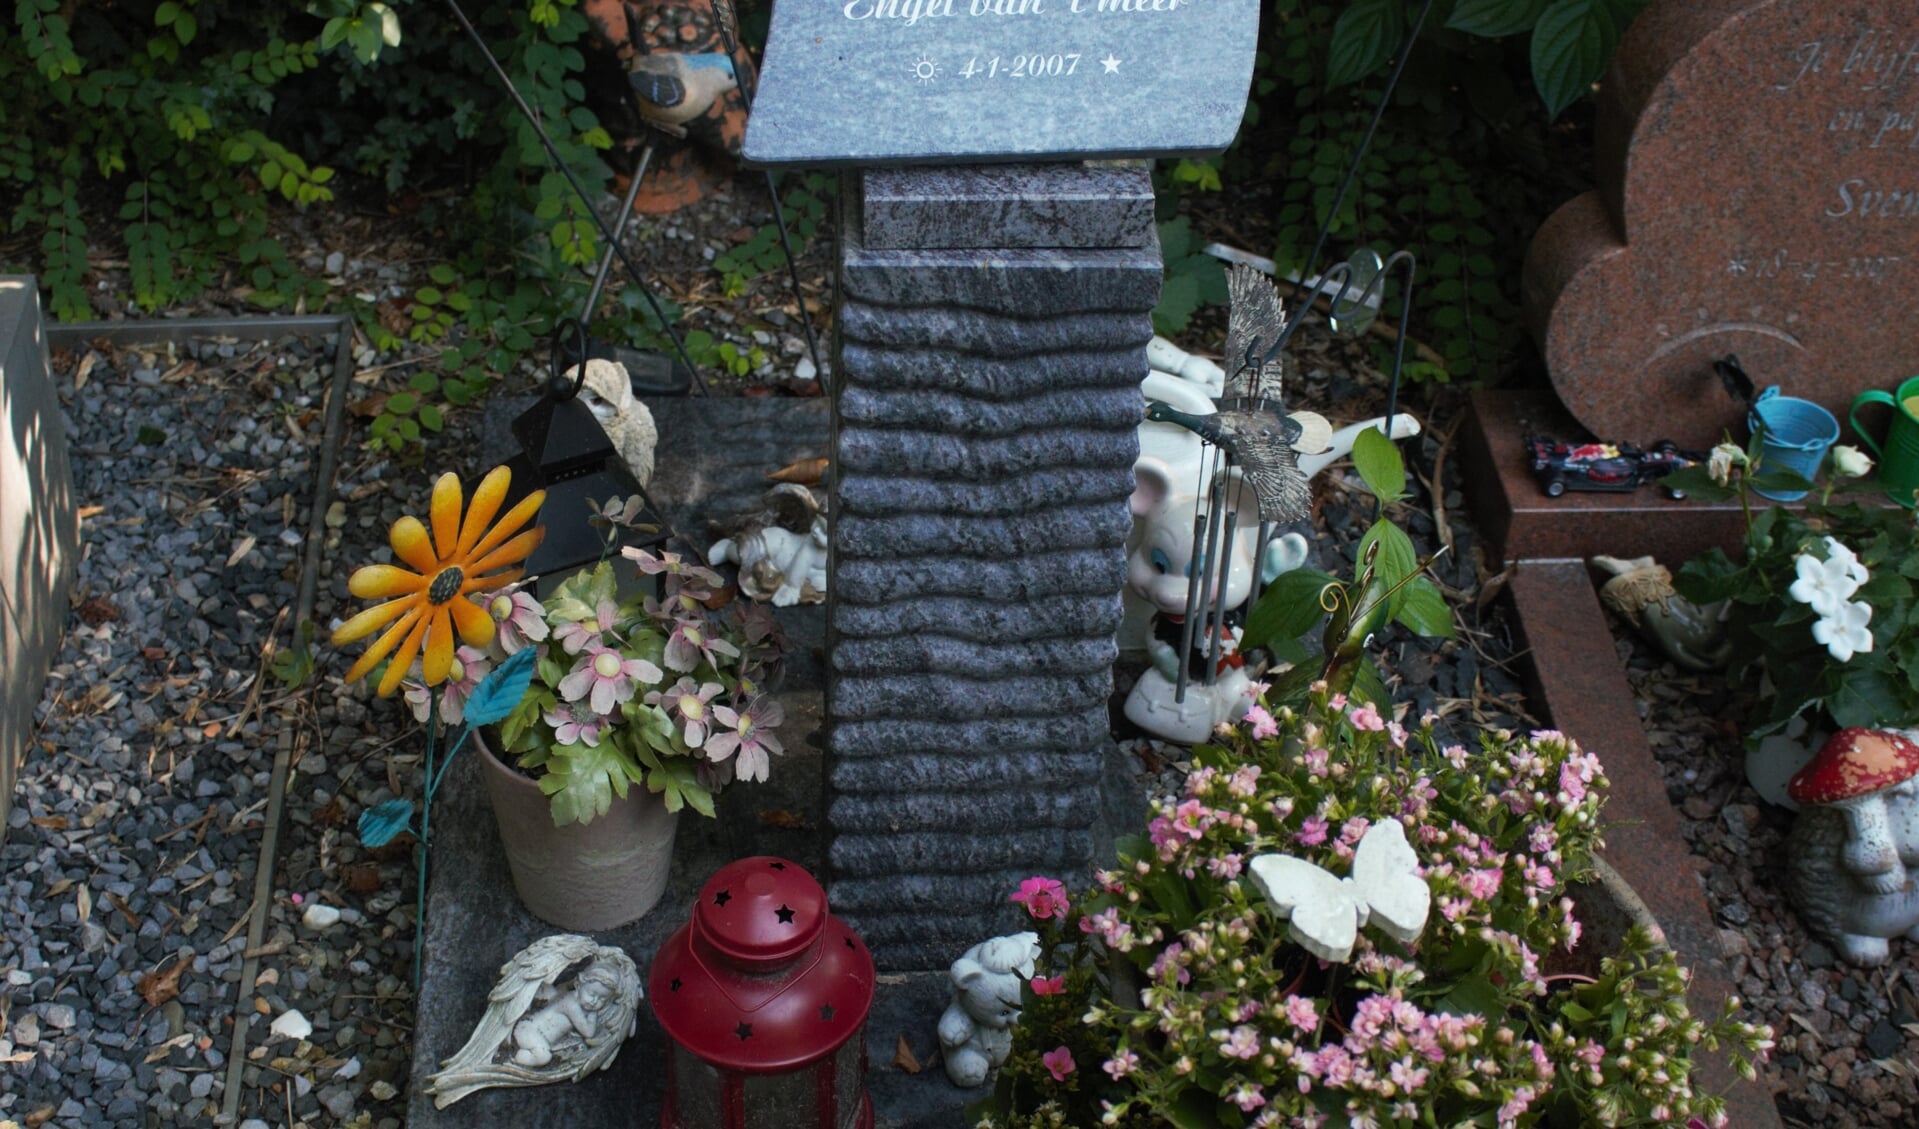 In 2007 werd een dode baby gevonden bij het Engelermeer. Ze kreeg de naam 'Engel van 't Meer' en werd begraven op begraafplaats Orthen.